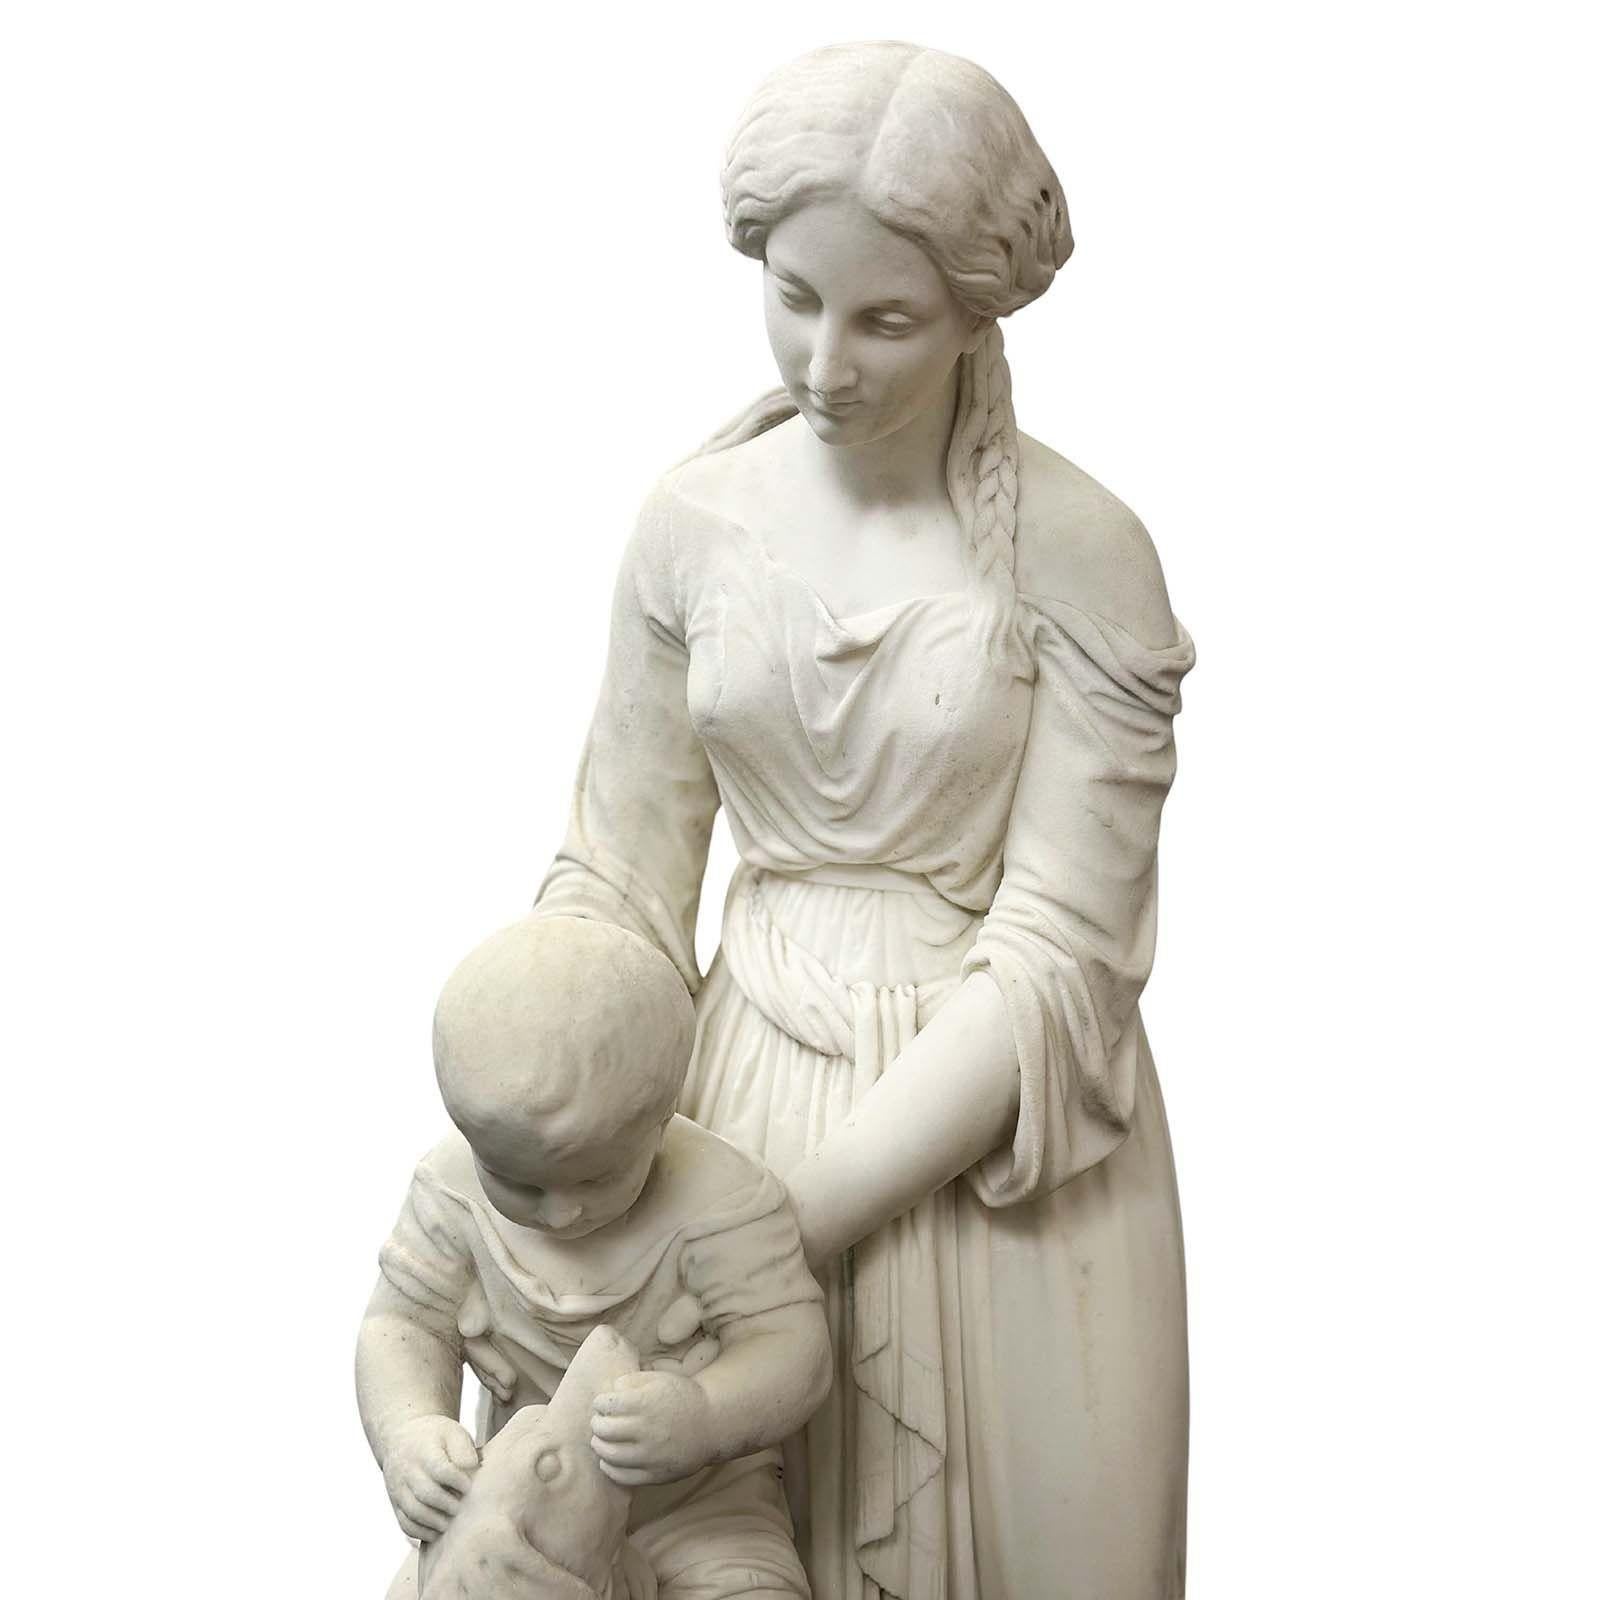 Charmante sculpture en marbre blanc réalisée en Italie au XIXe siècle. Le point central est une mère gracieuse, drapée dans une tenue traditionnelle, une belle tresse ornant ses cheveux, qui tient délicatement son jeune fils dans ses bras. L'enfant,